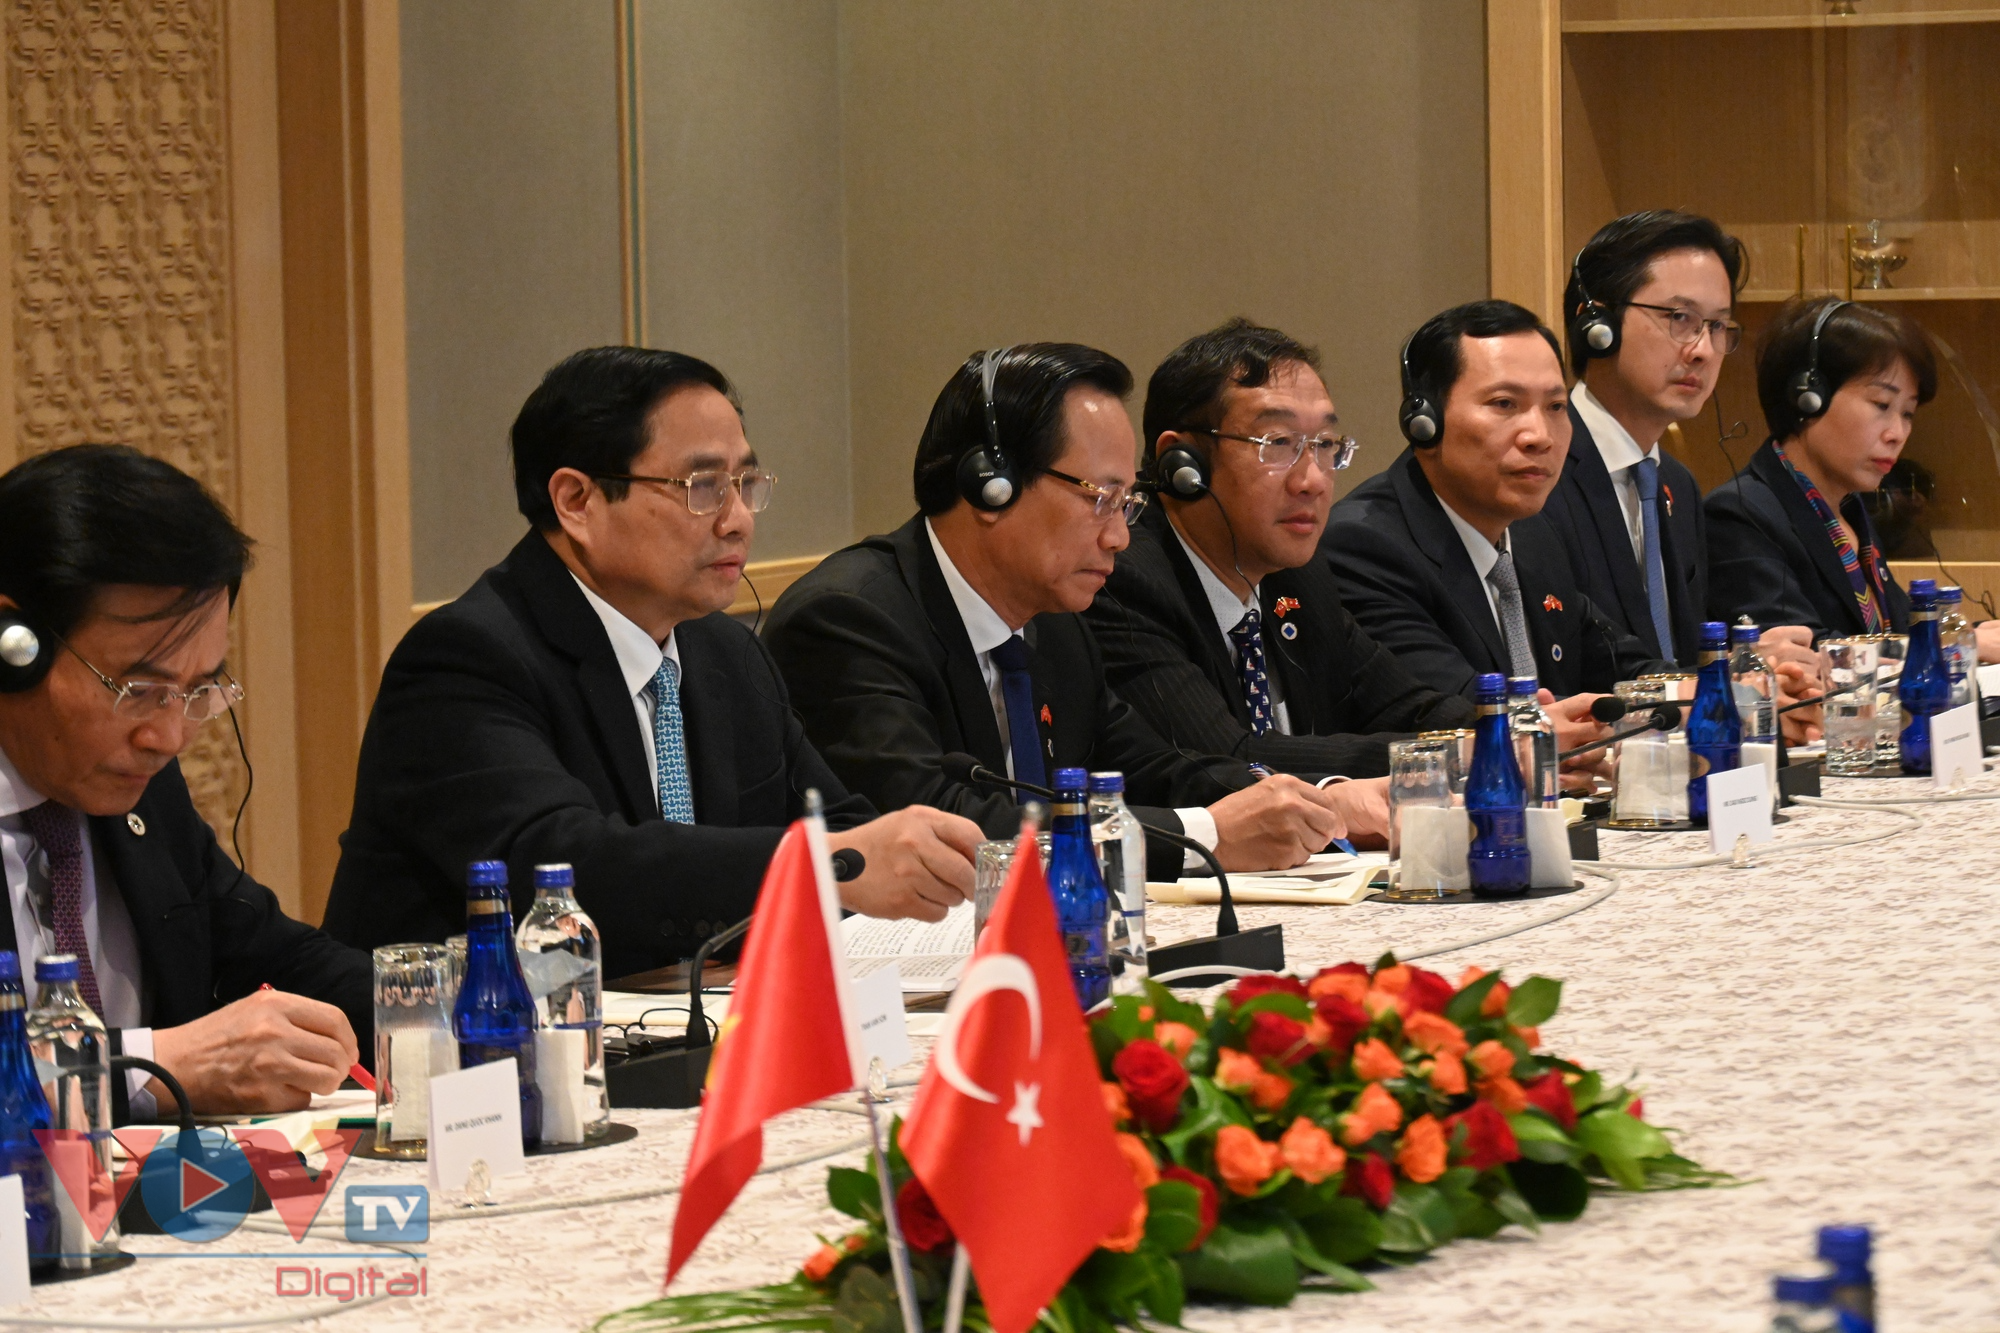 Thủ tướng Phạm Minh Chính đánh giá cao việc Thổ Nhĩ Kỳ hiện là nhà đầu tư trực tiếp lớn nhất từ khu vực Trung Đông vào Việt Nam.jpg